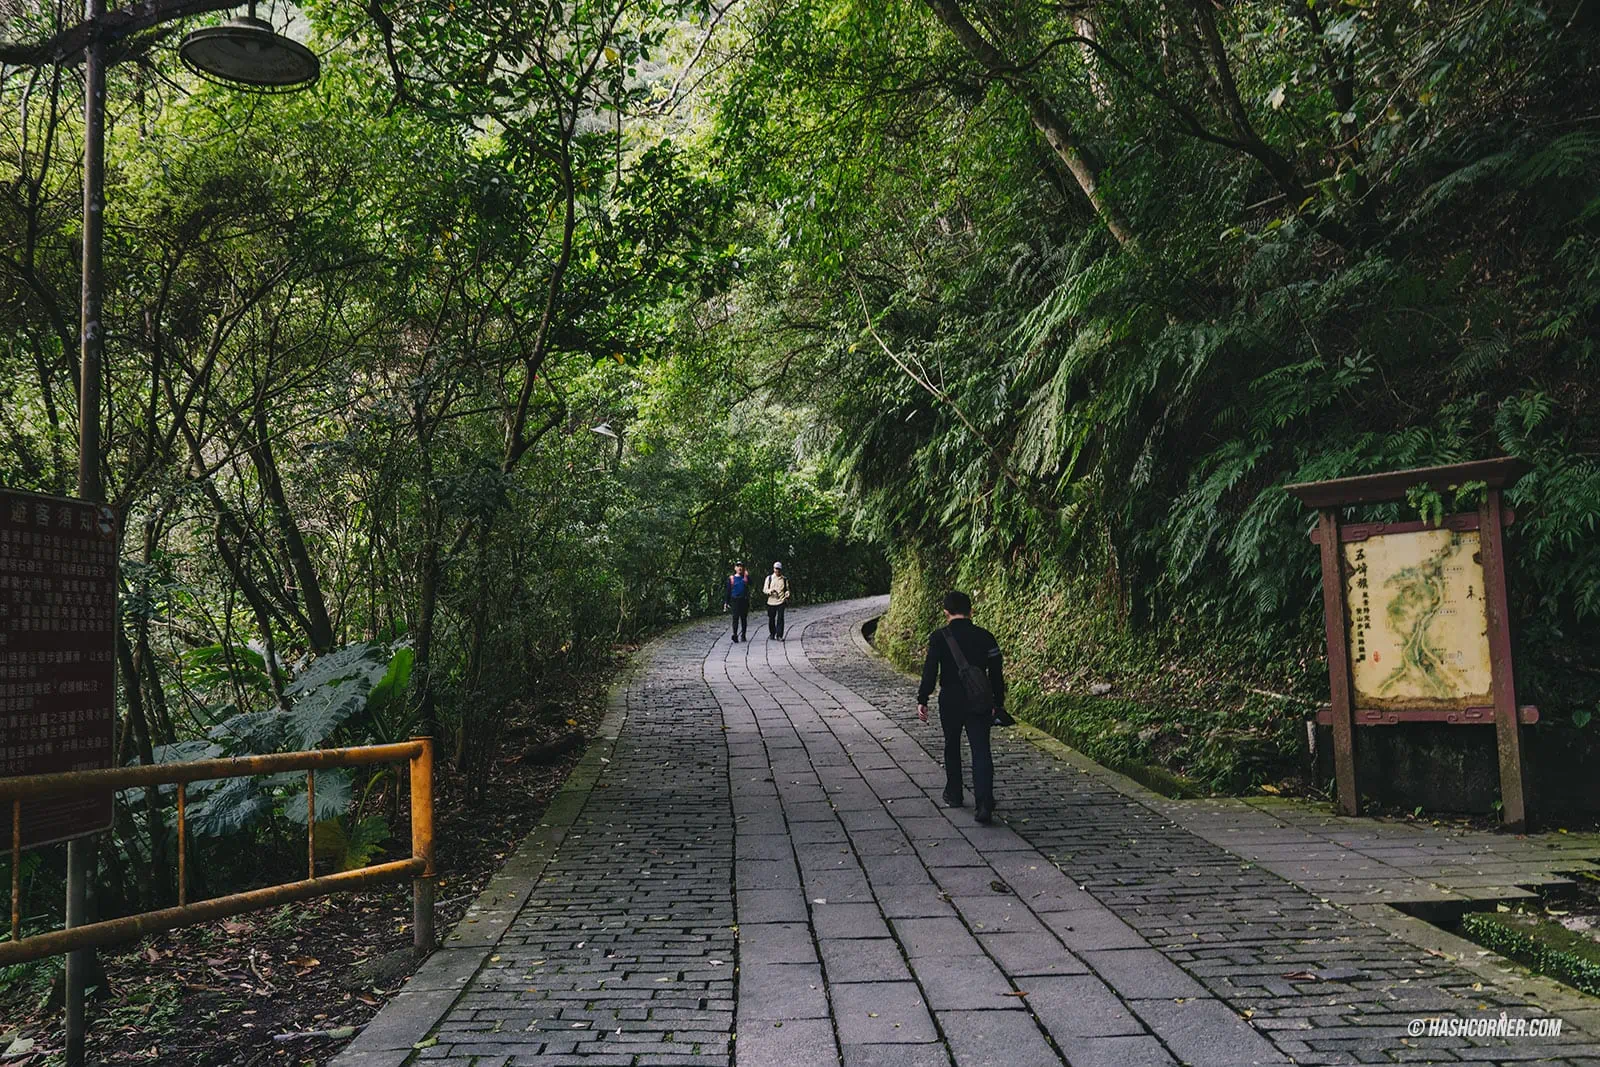 รีวิว อี๋หลาน (Yilan) x ไต้หวัน ขับรถเที่ยวธรรมชาติและไท่ผิงซาน [Taiwan Road Trip EP.2]